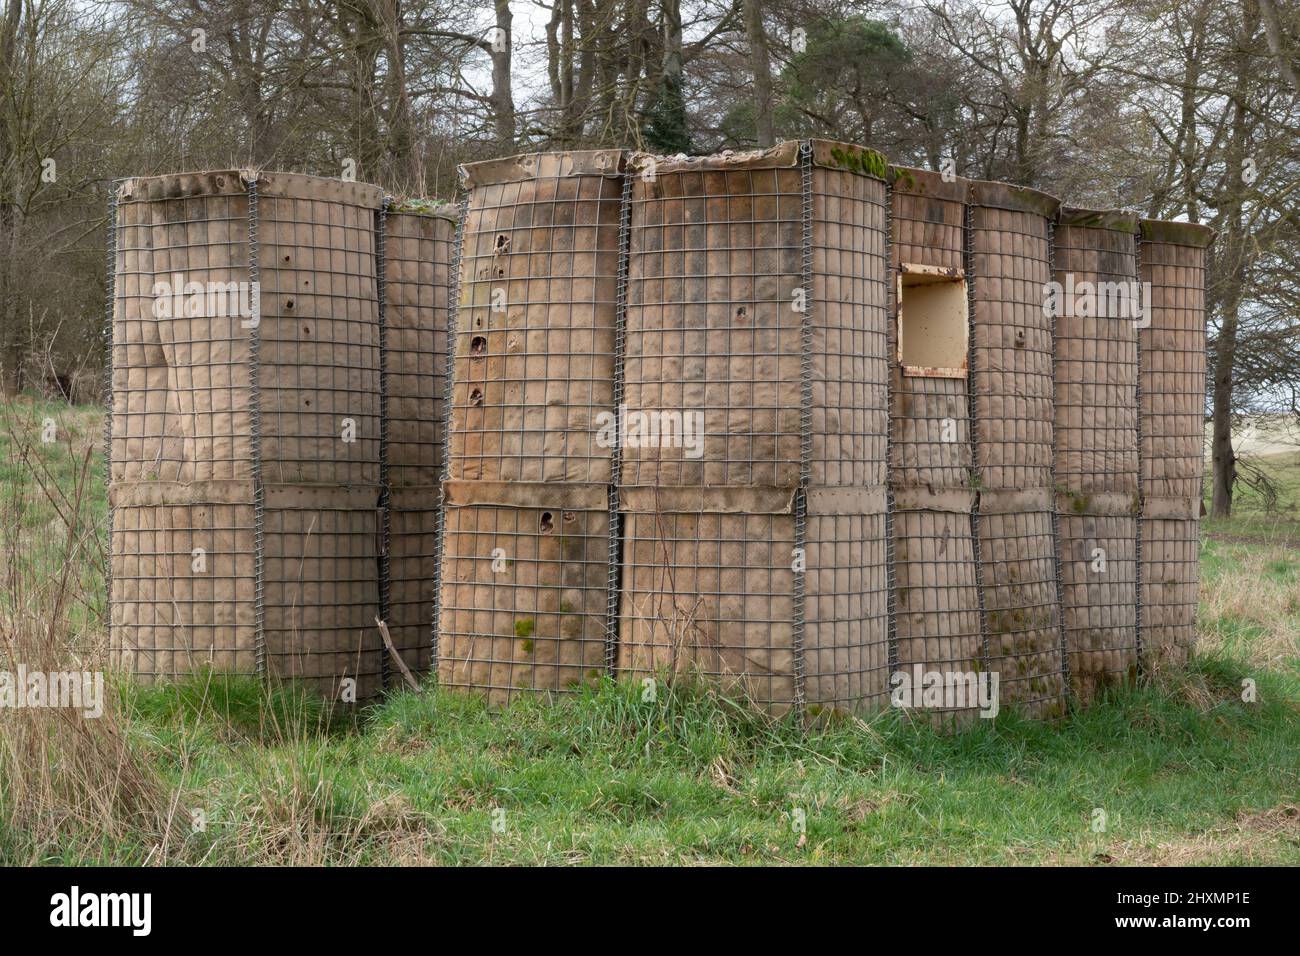 Esercito britannico soldato addestramento edificio fortificato, scatola di pillole Foto Stock